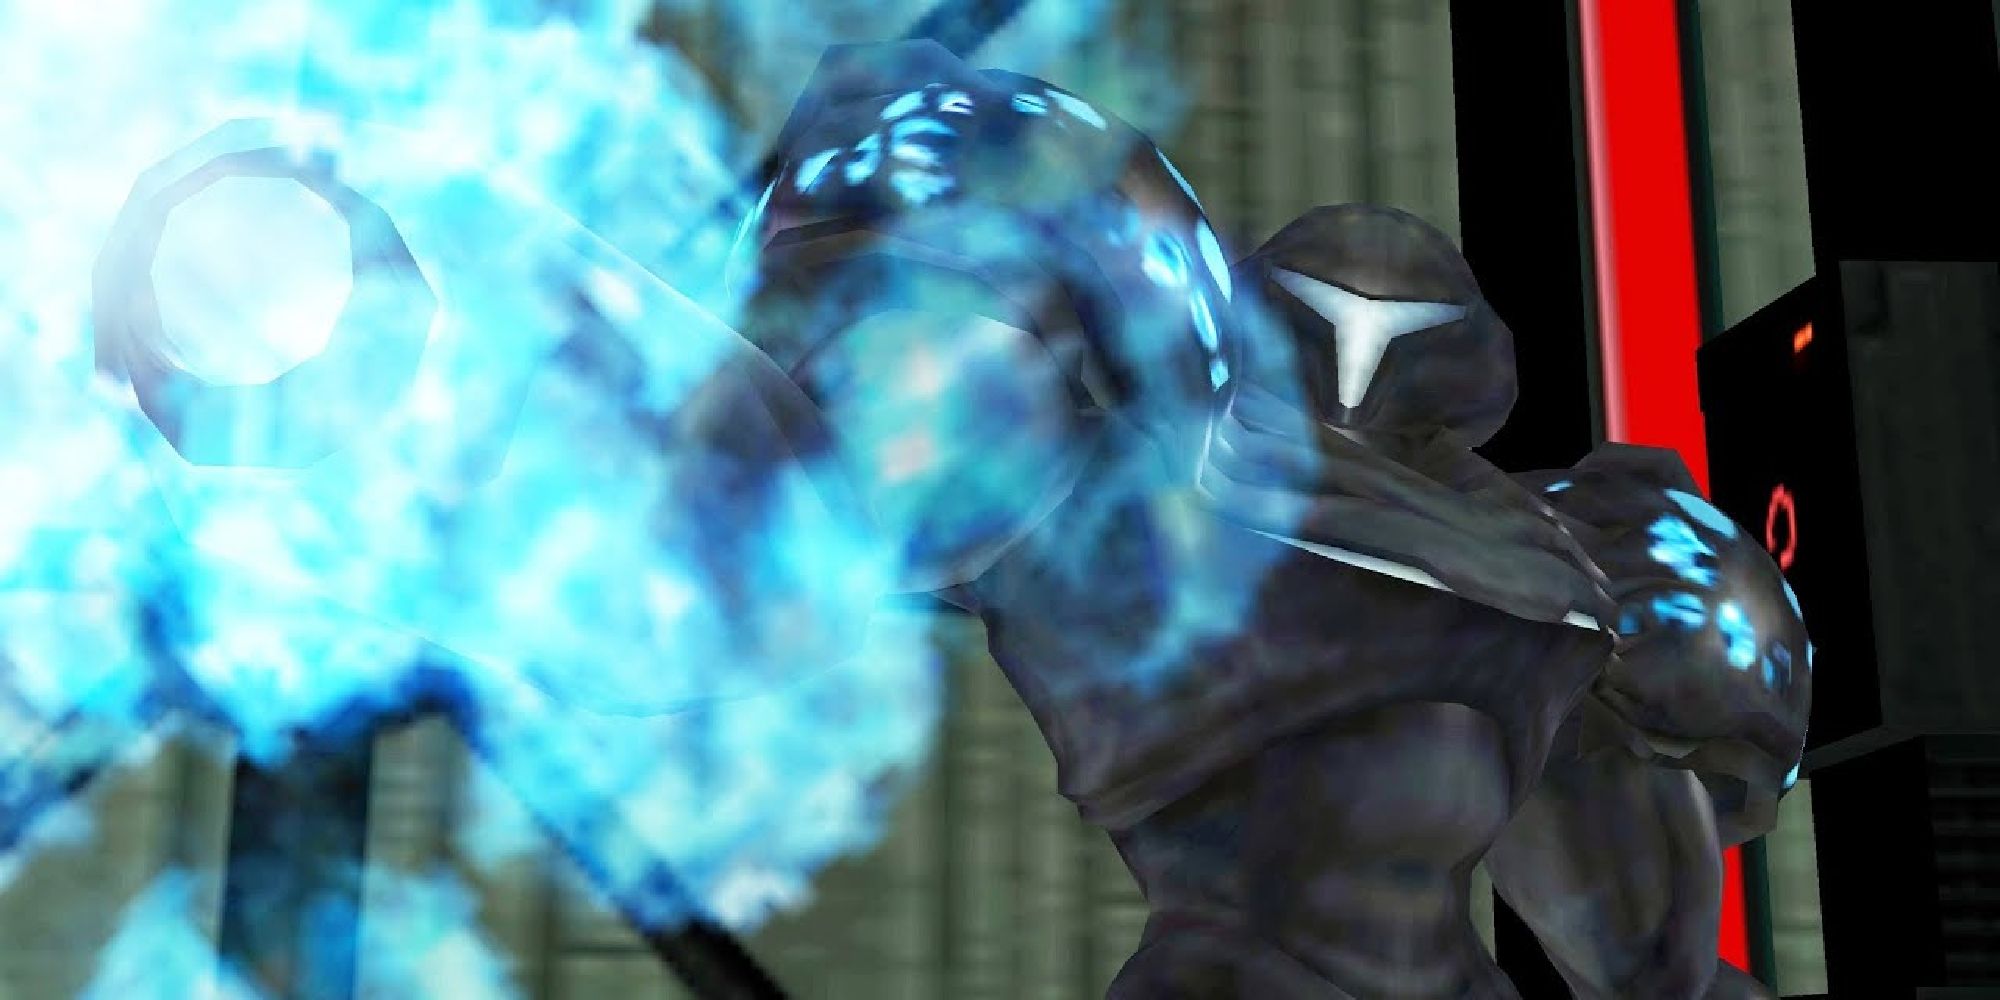 Dark Samus firing its weapon in Metroid Prime 2